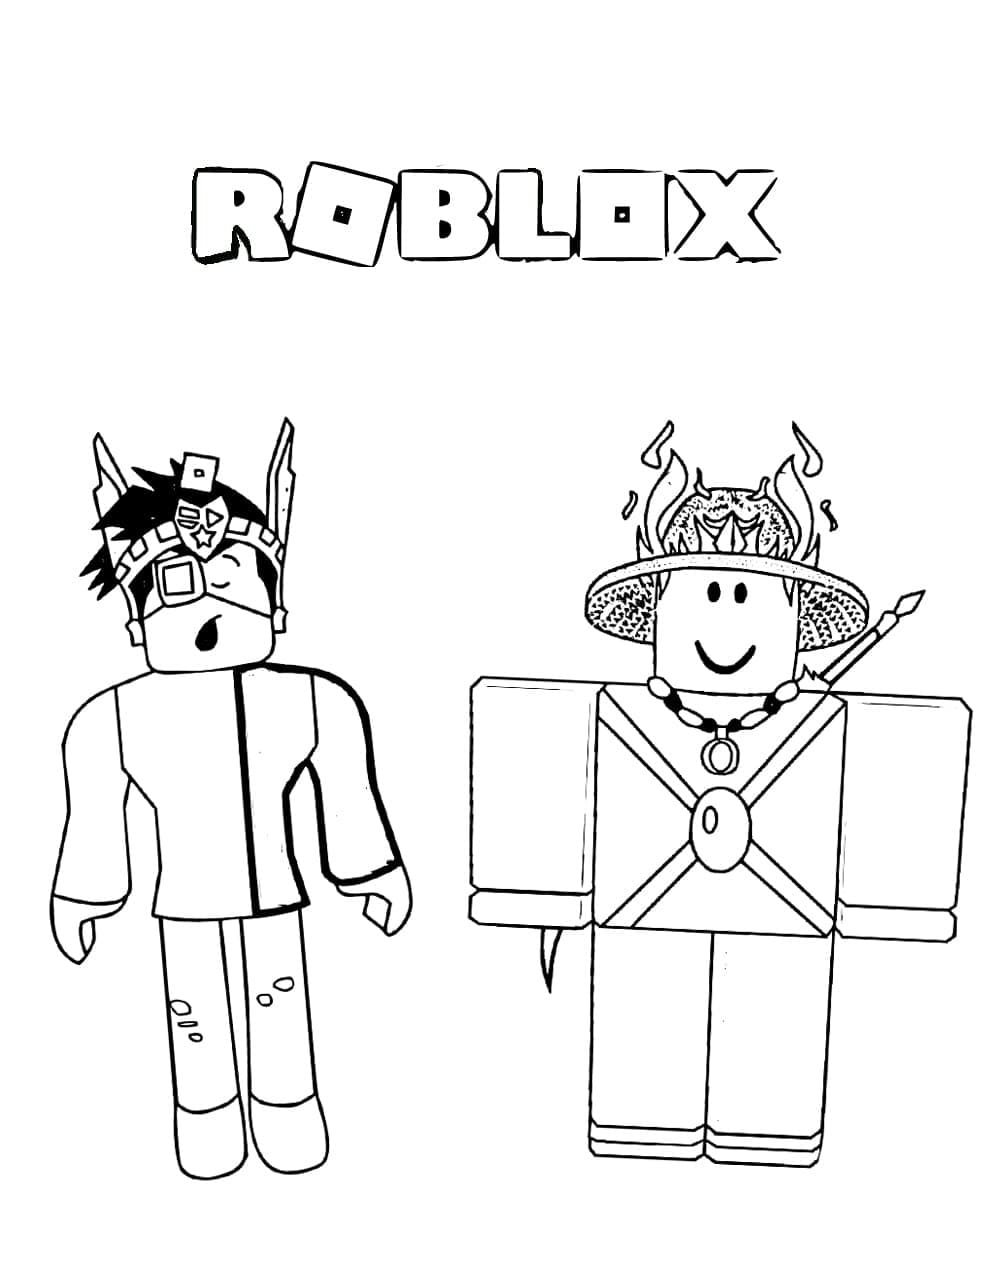 Fise de Colorat cu Roblox Noob - Descărcați, imprimați sau colorați online  gratuit